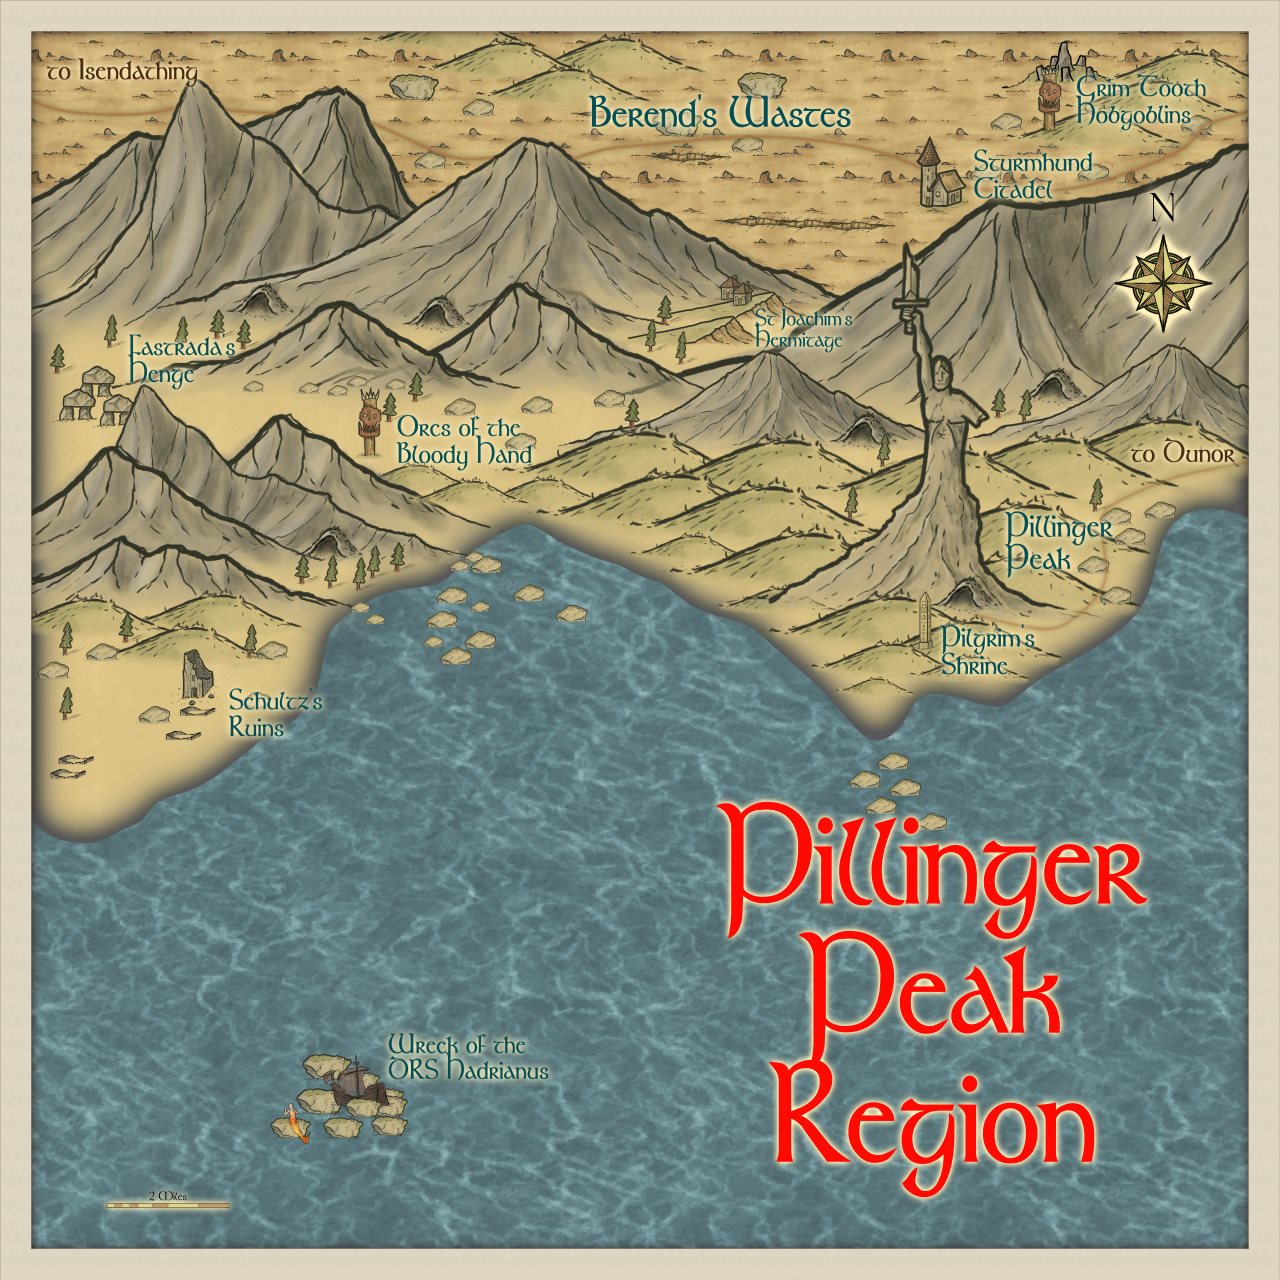 Nibirum Map: pillinger peak region by Quenten Walker